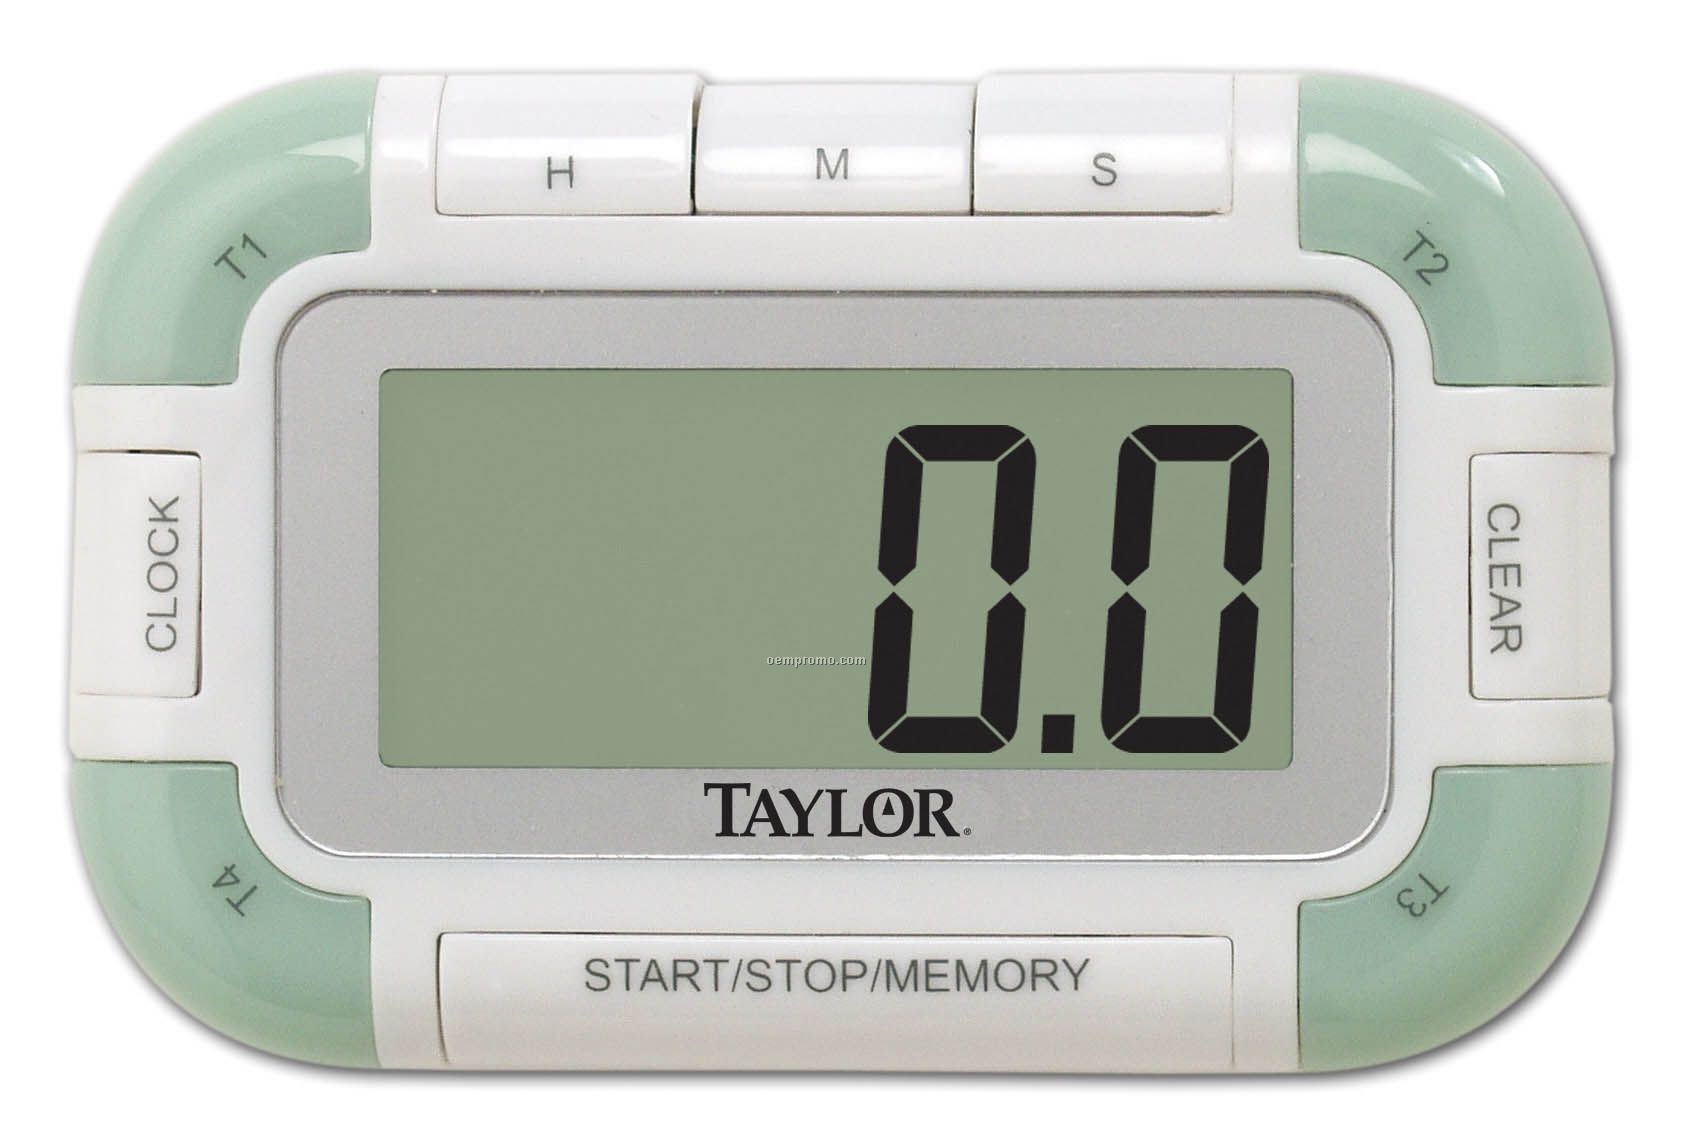 Taylor 4 Event Digital Timer